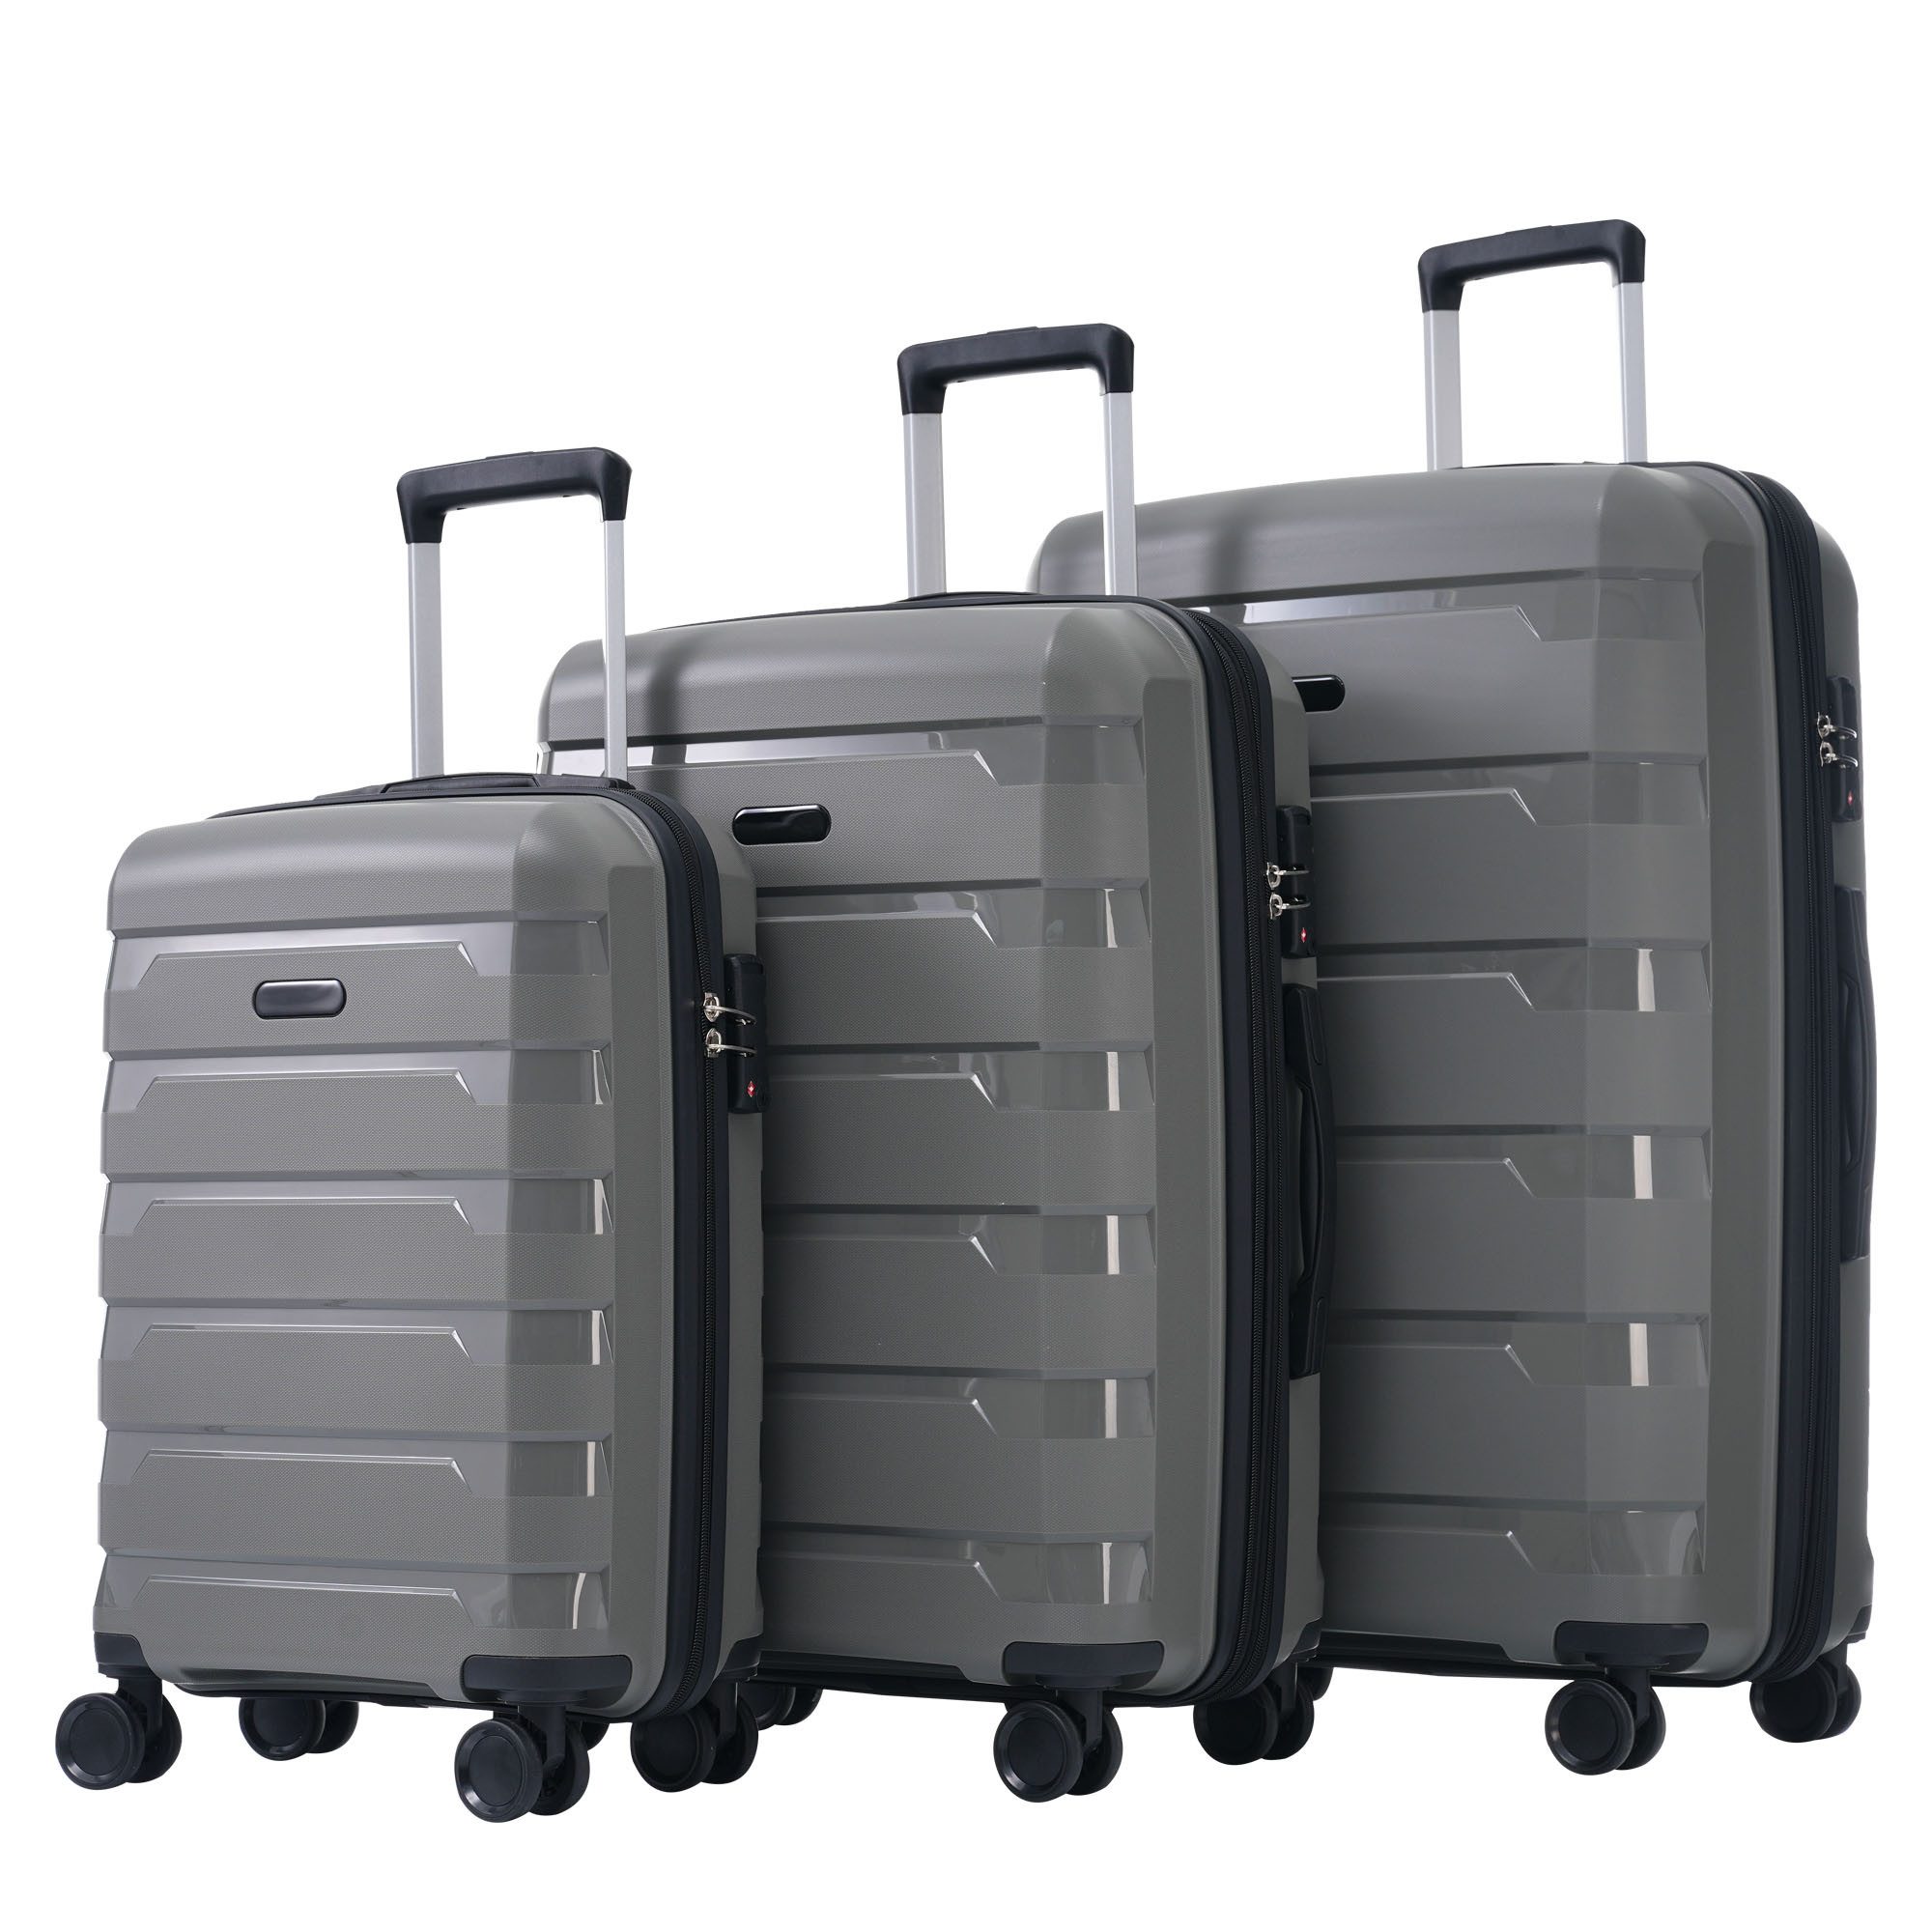 Blusmart Kofferset 3-teiliges M-L-XL-Koffer, 4 Rollen, (Robust, leicht und stilvoll, 3 tlg., Hartschalentrolley Reisekoffer), Universal- und Doppelrädern sowie TSA-Schlössern